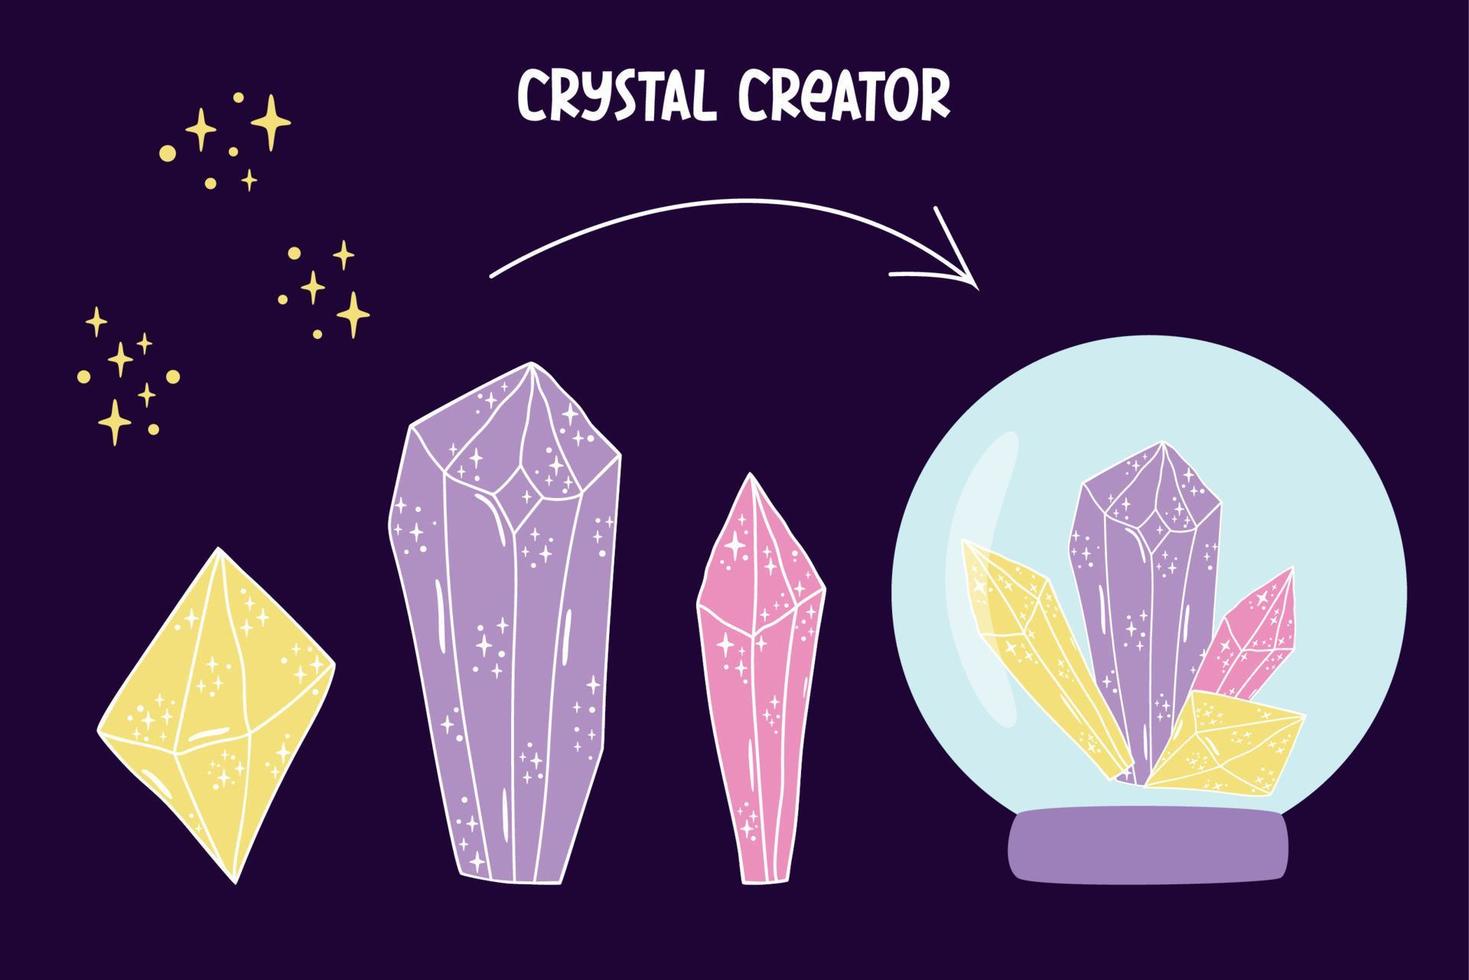 cristallo impostare. cristallo Creatore cristallino pietra o gemma. Magia mano disegnato cristalli e stelle trame. minerale pietroso cristallizzazione. non trattati diamante nel viola colori. vettore illustrazione.